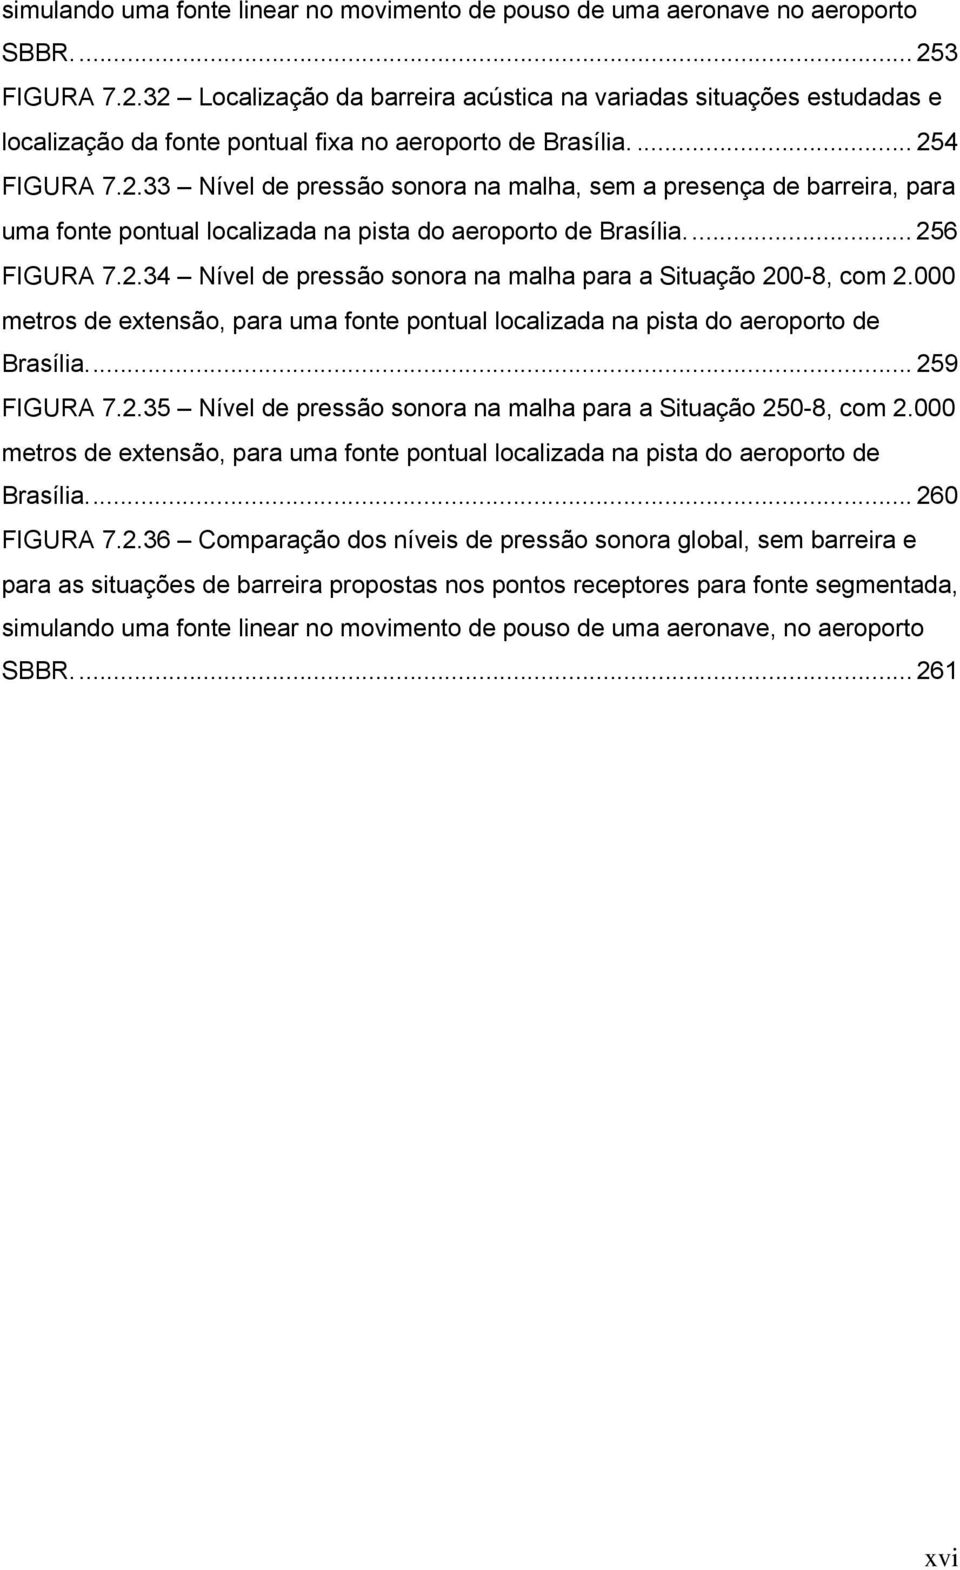 ... 256 FIGURA 7.2.34 Nível de pressão sonora na malha para a Situação 200-8, com 2.000 metros de extensão, para uma fonte pontual localizada na pista do aeroporto de Brasília... 259 FIGURA 7.2.35 Nível de pressão sonora na malha para a Situação 250-8, com 2.